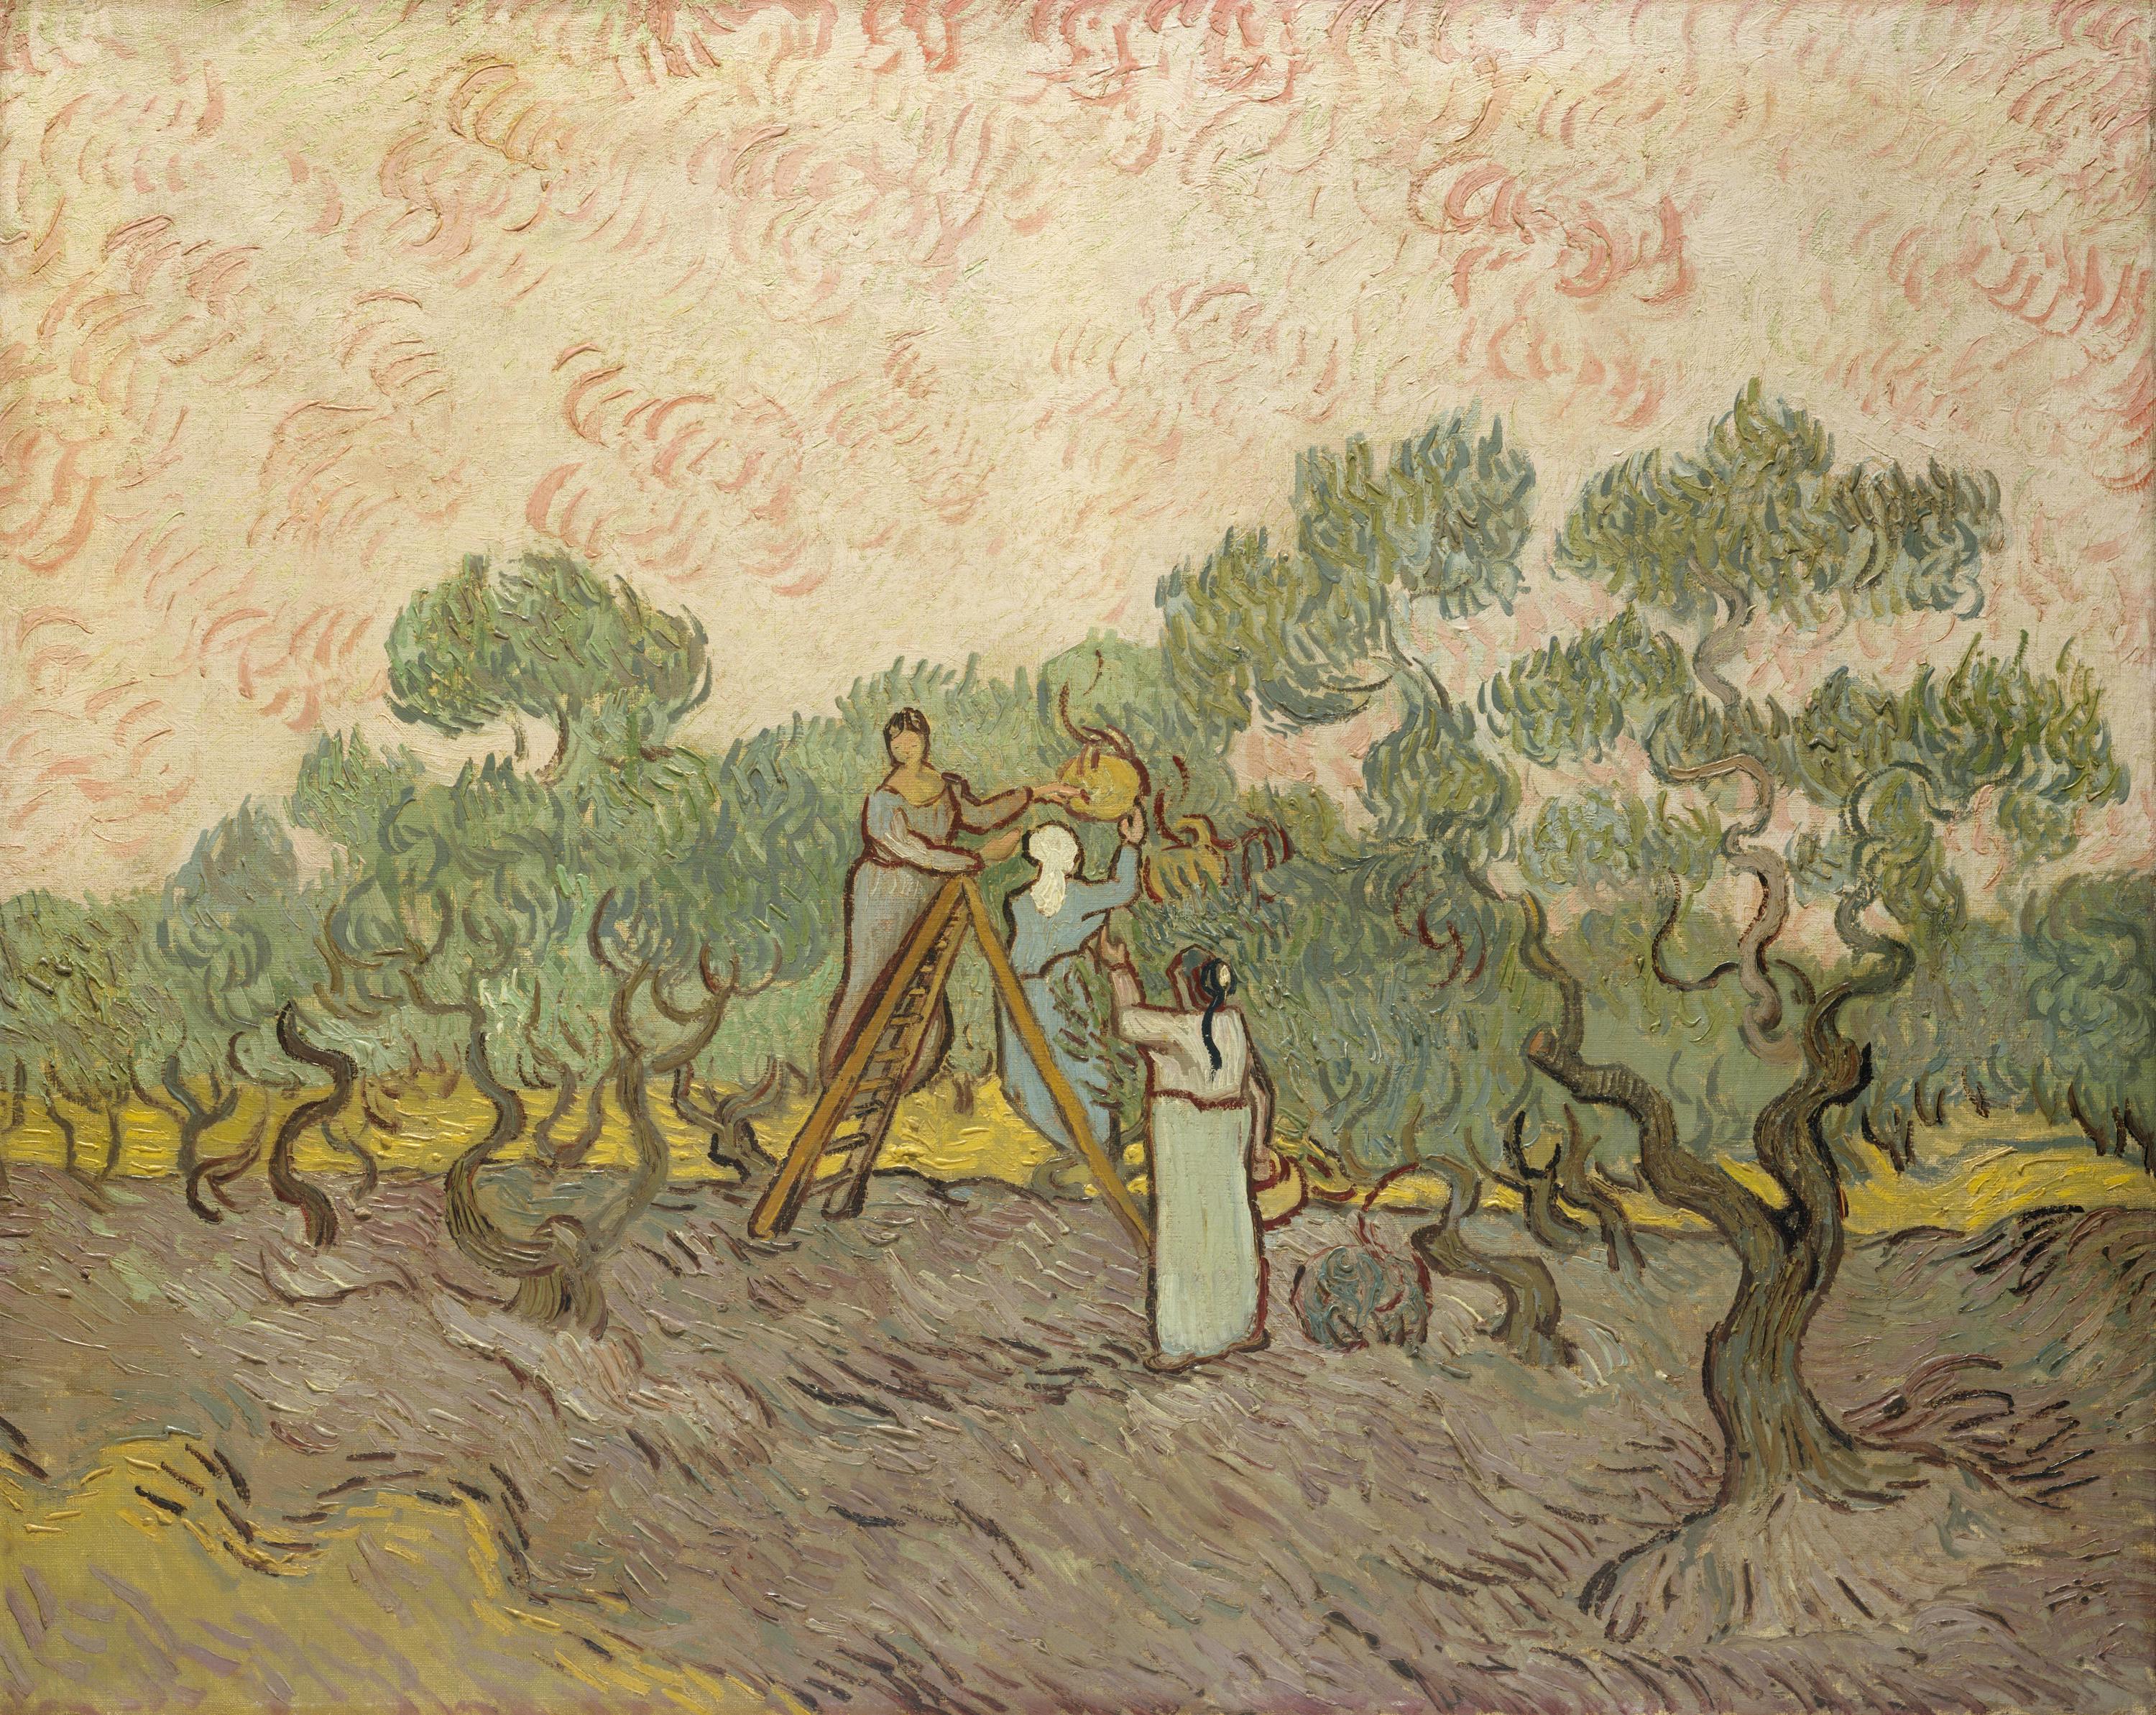 Mujeres recogiendo aceitunas by Vincent van Gogh - 1889 - 72,7 x 91,4 cm Museo Metropolitano de Arte